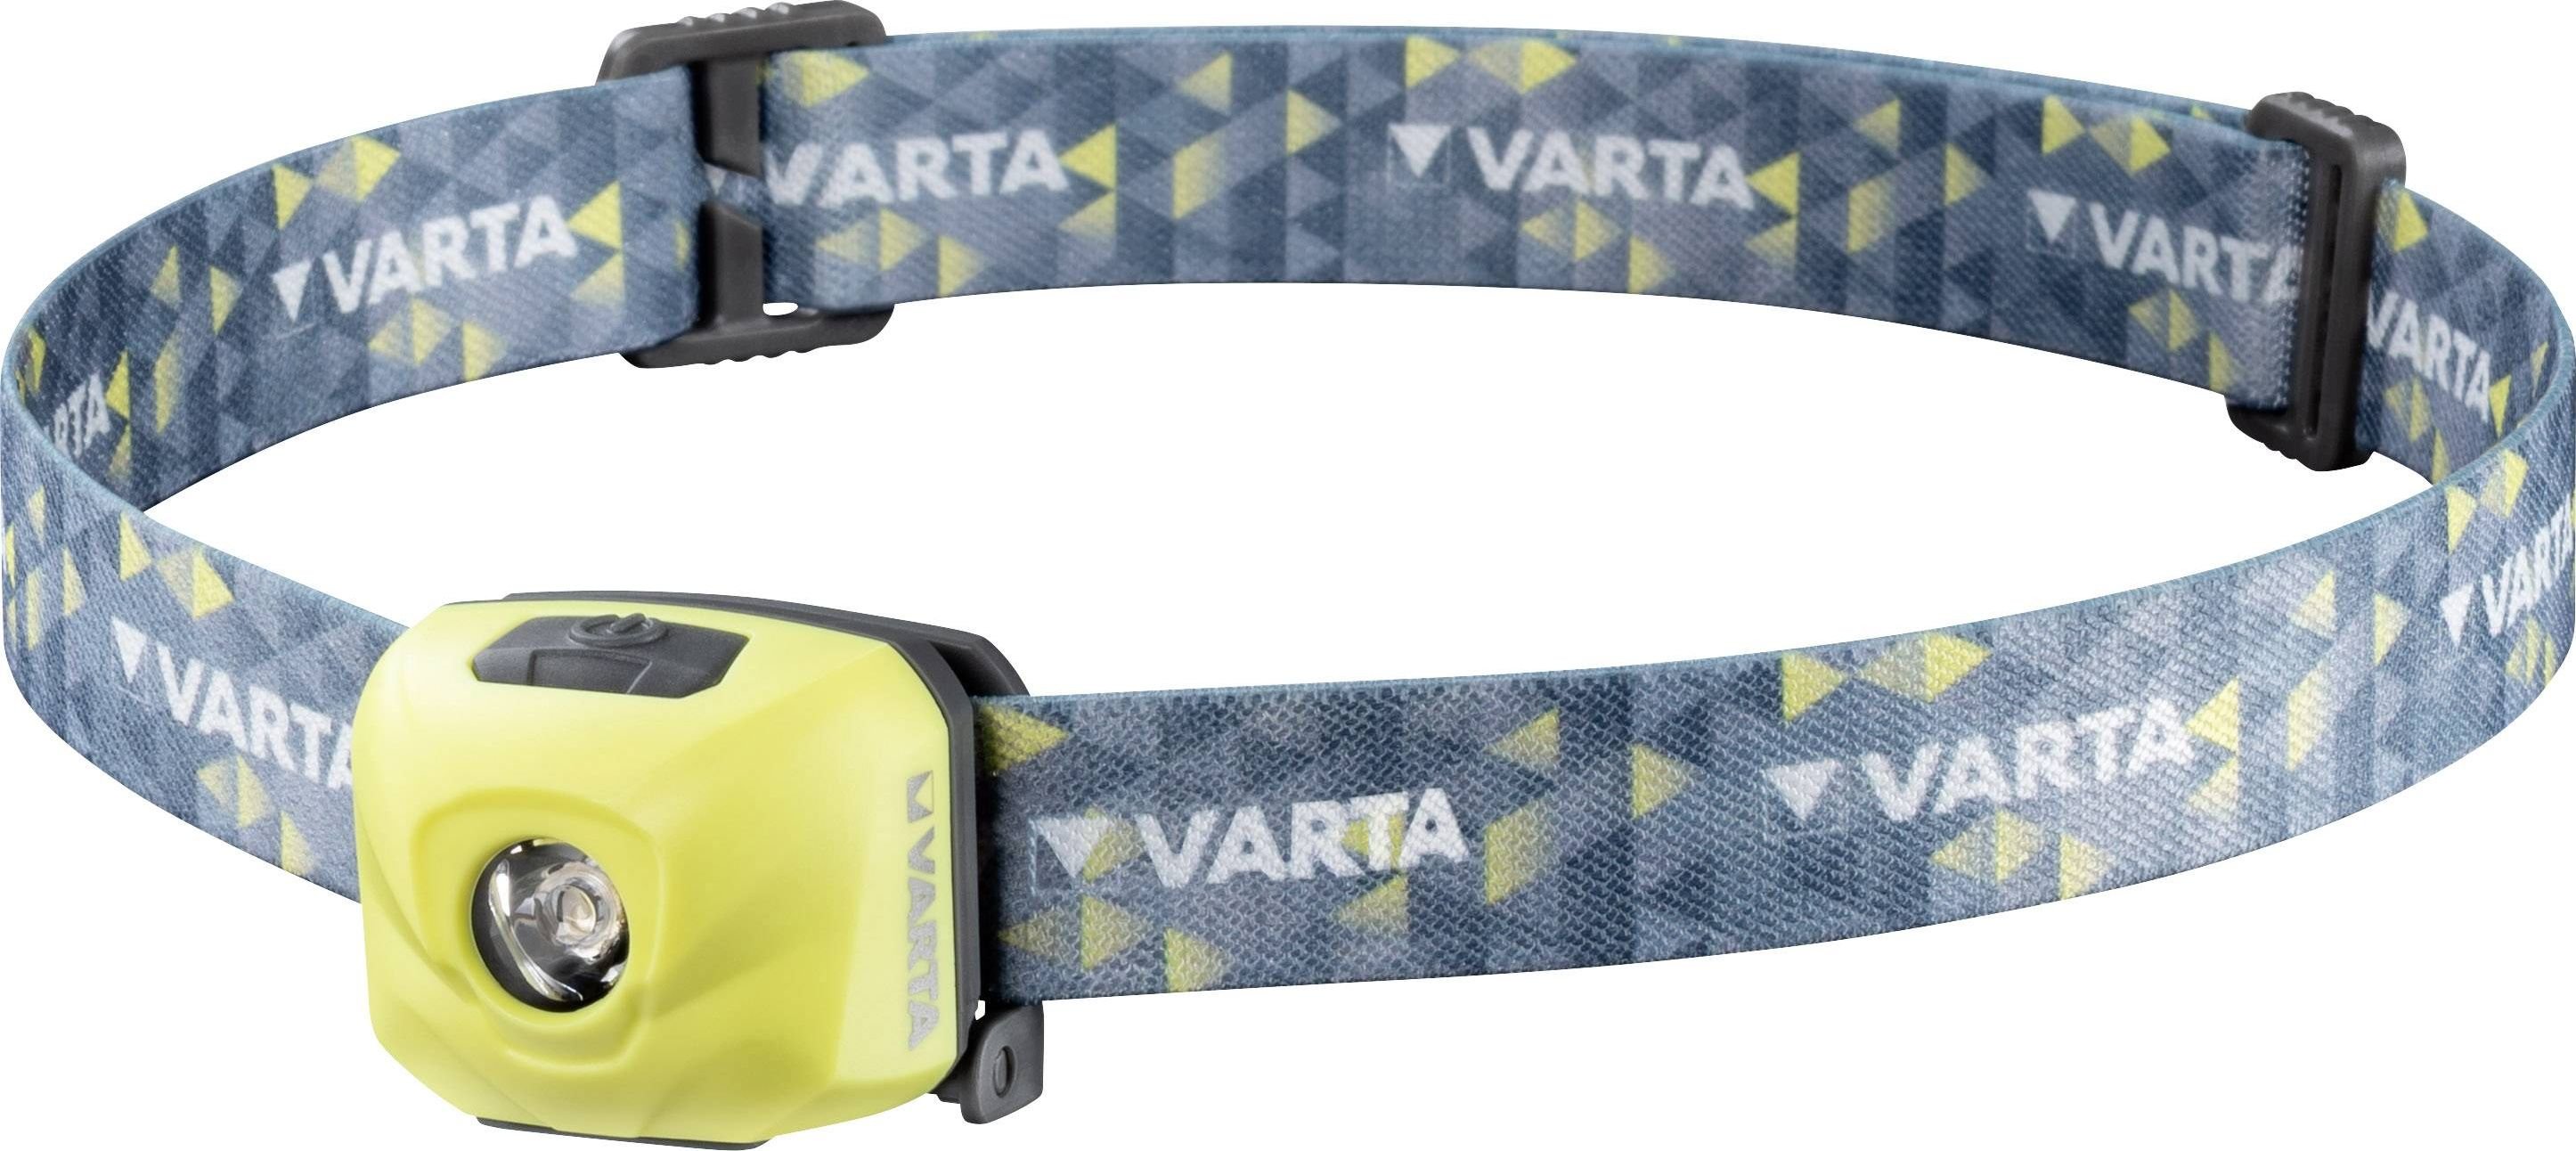 Lanterna LED Varta Outdoor Sports Ultralight H30R, 300 lm, cua cumulator 600mAh 3.7V, IPX4,Galben